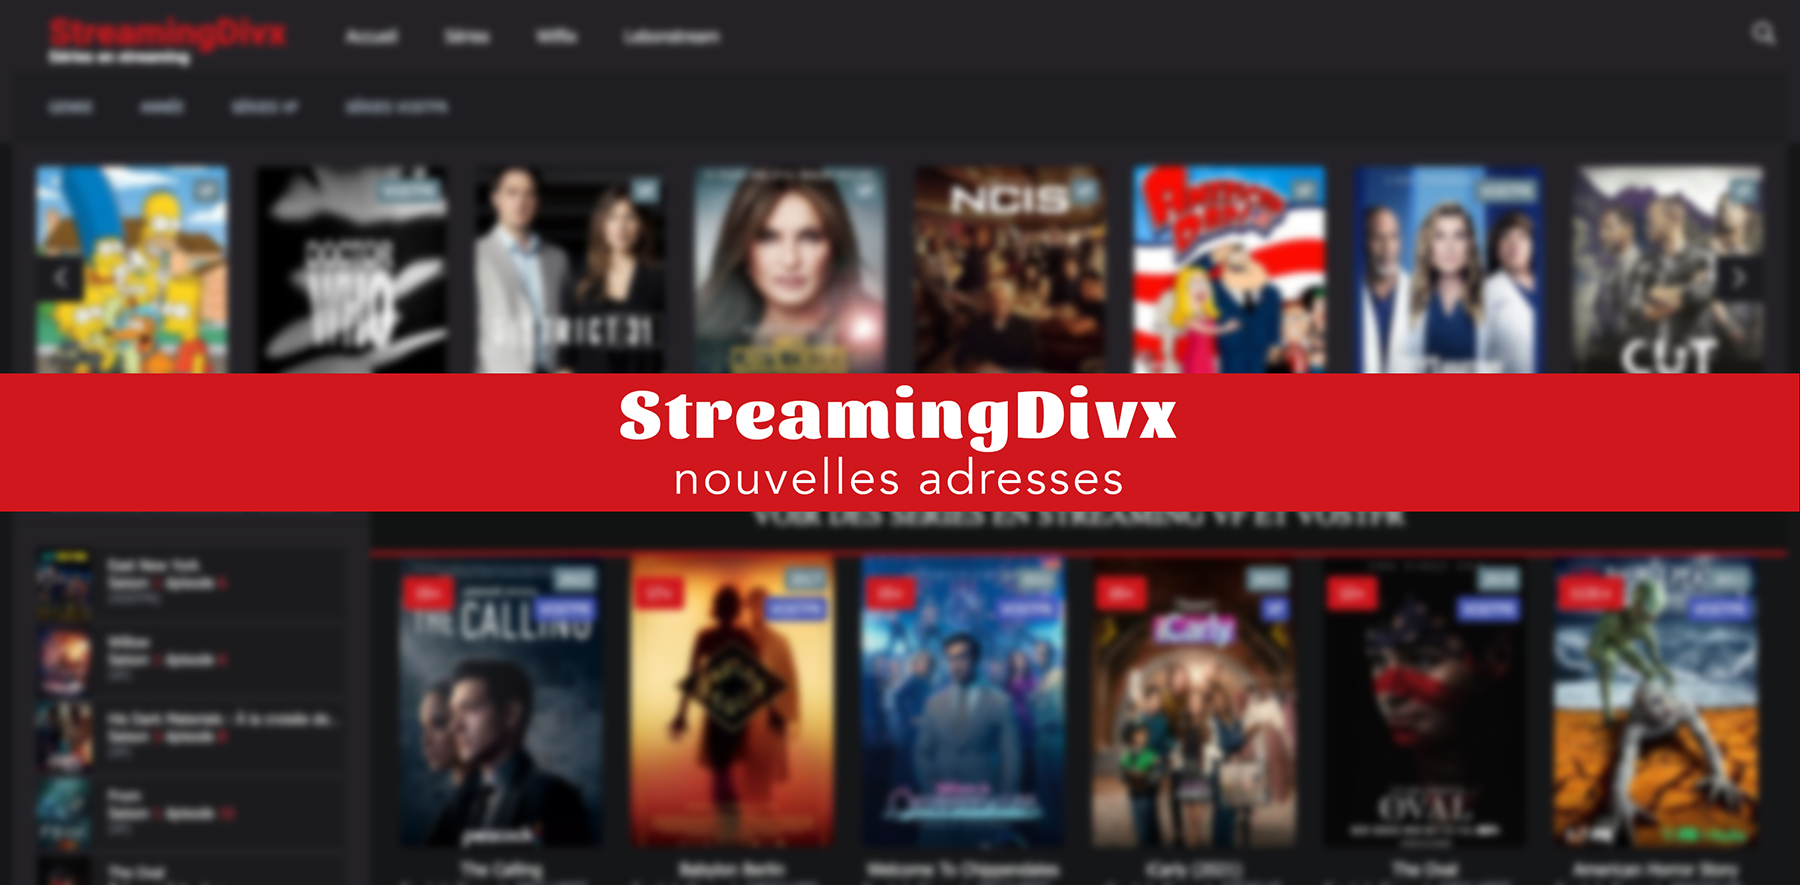 Streaming : Quelle est la nouvelle adresse officielle de StreamingDivx?